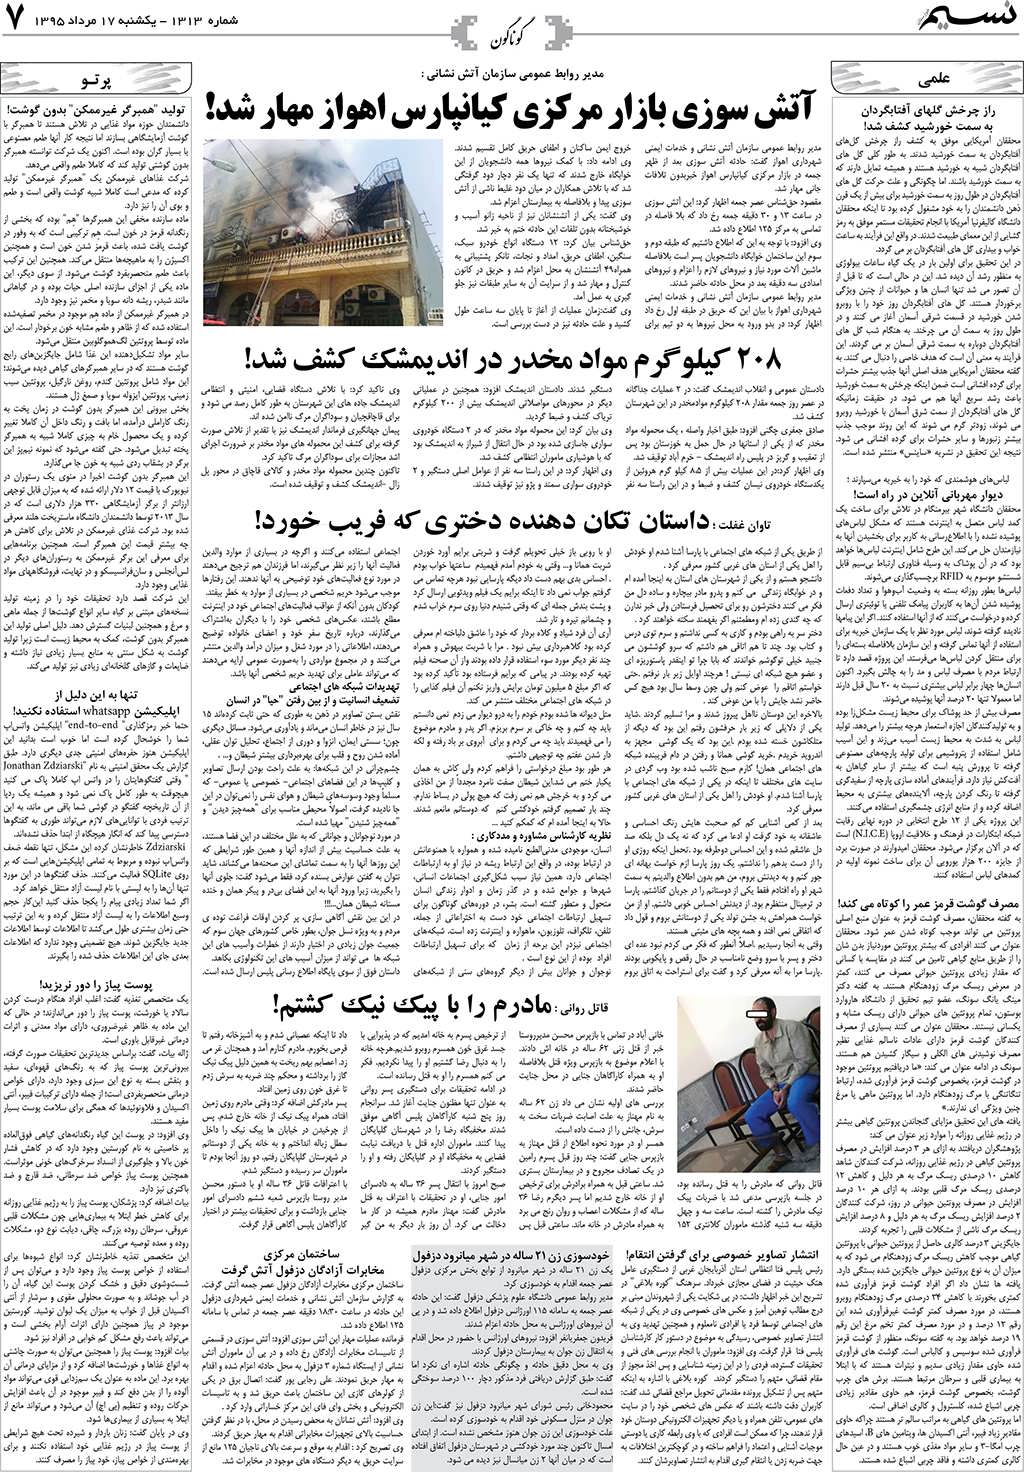 صفحه گوناگون روزنامه نسیم شماره 1313